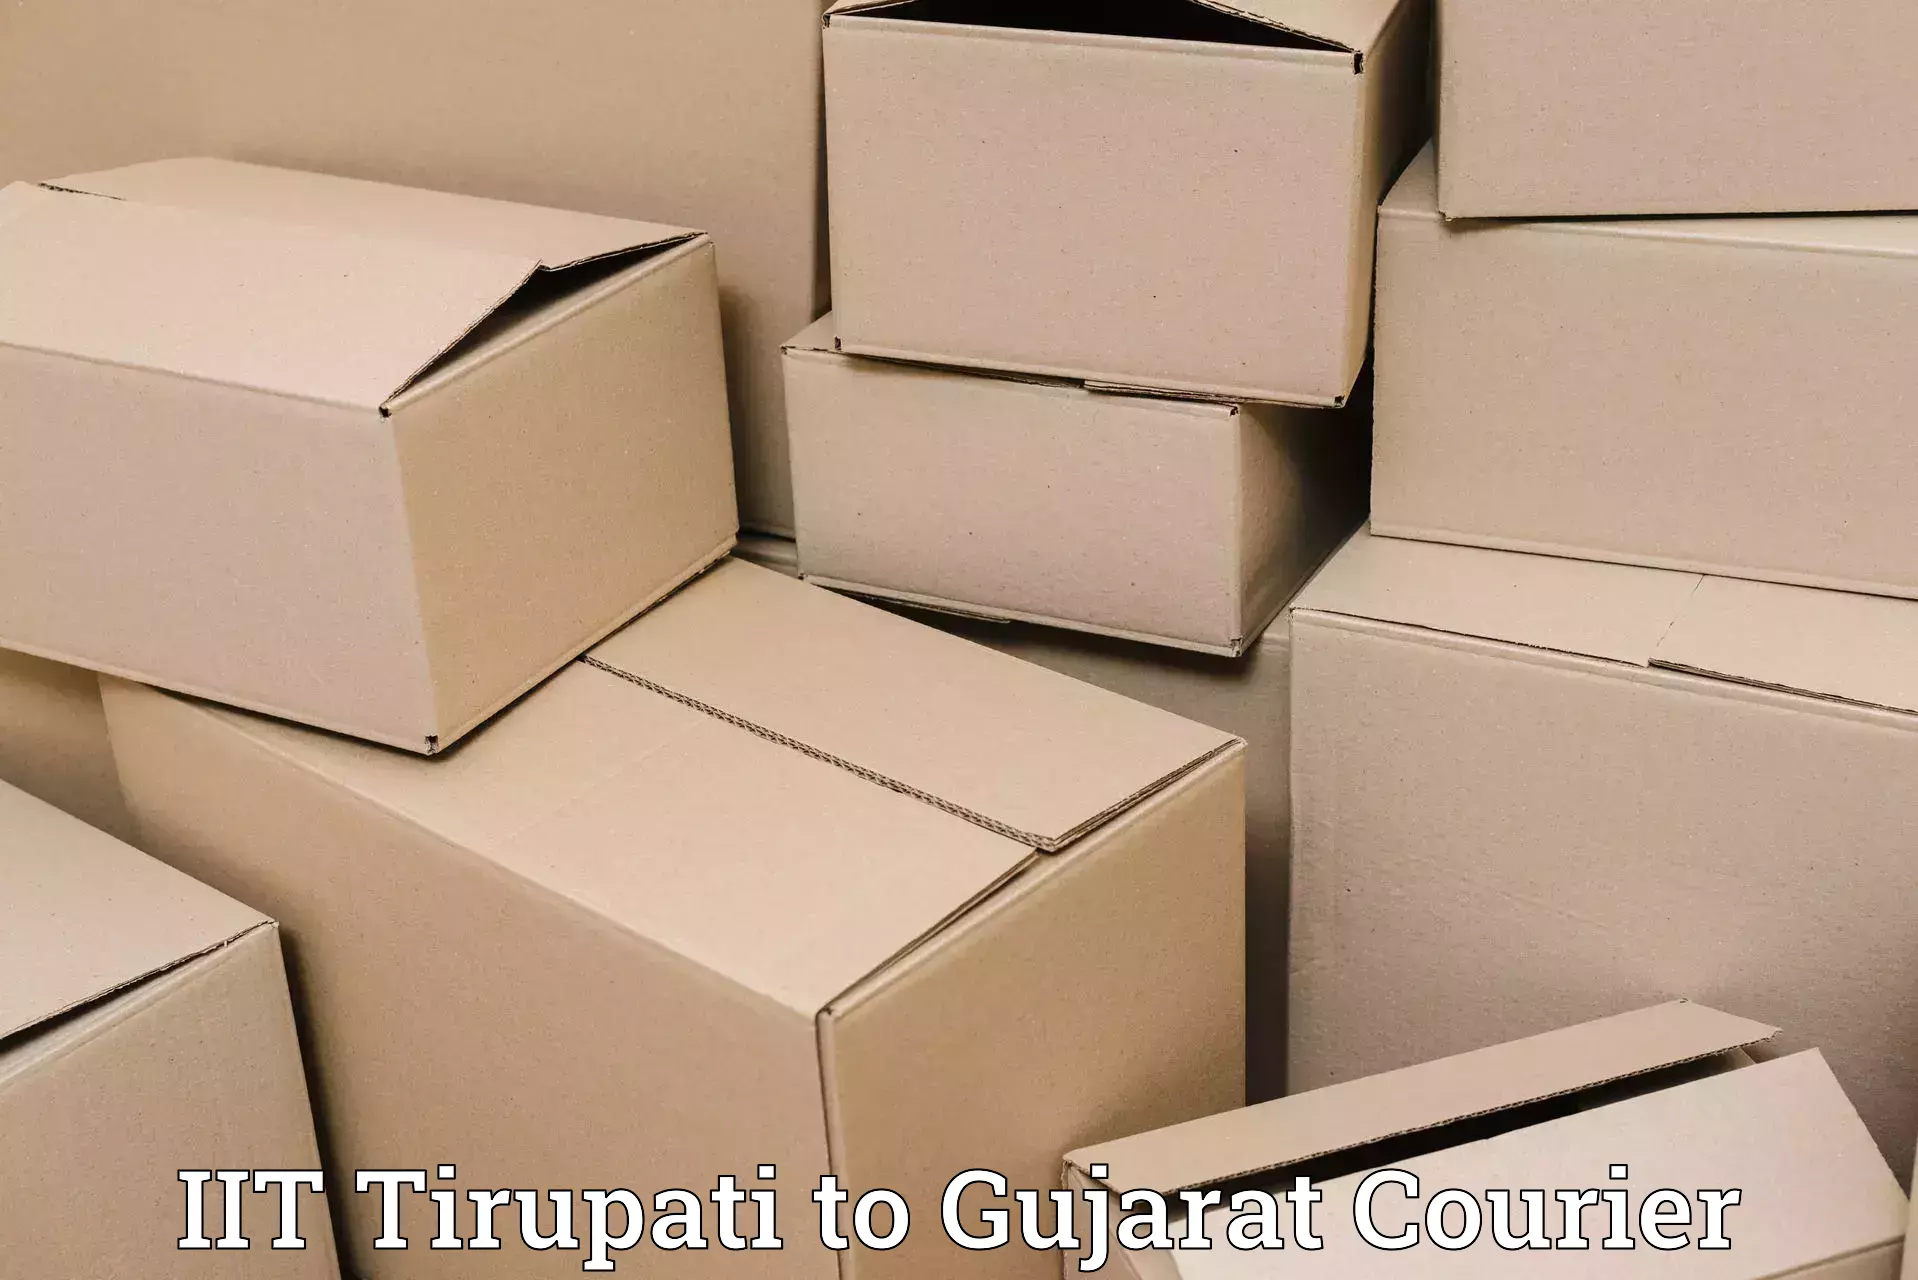 Smart courier technologies in IIT Tirupati to Himatnagar